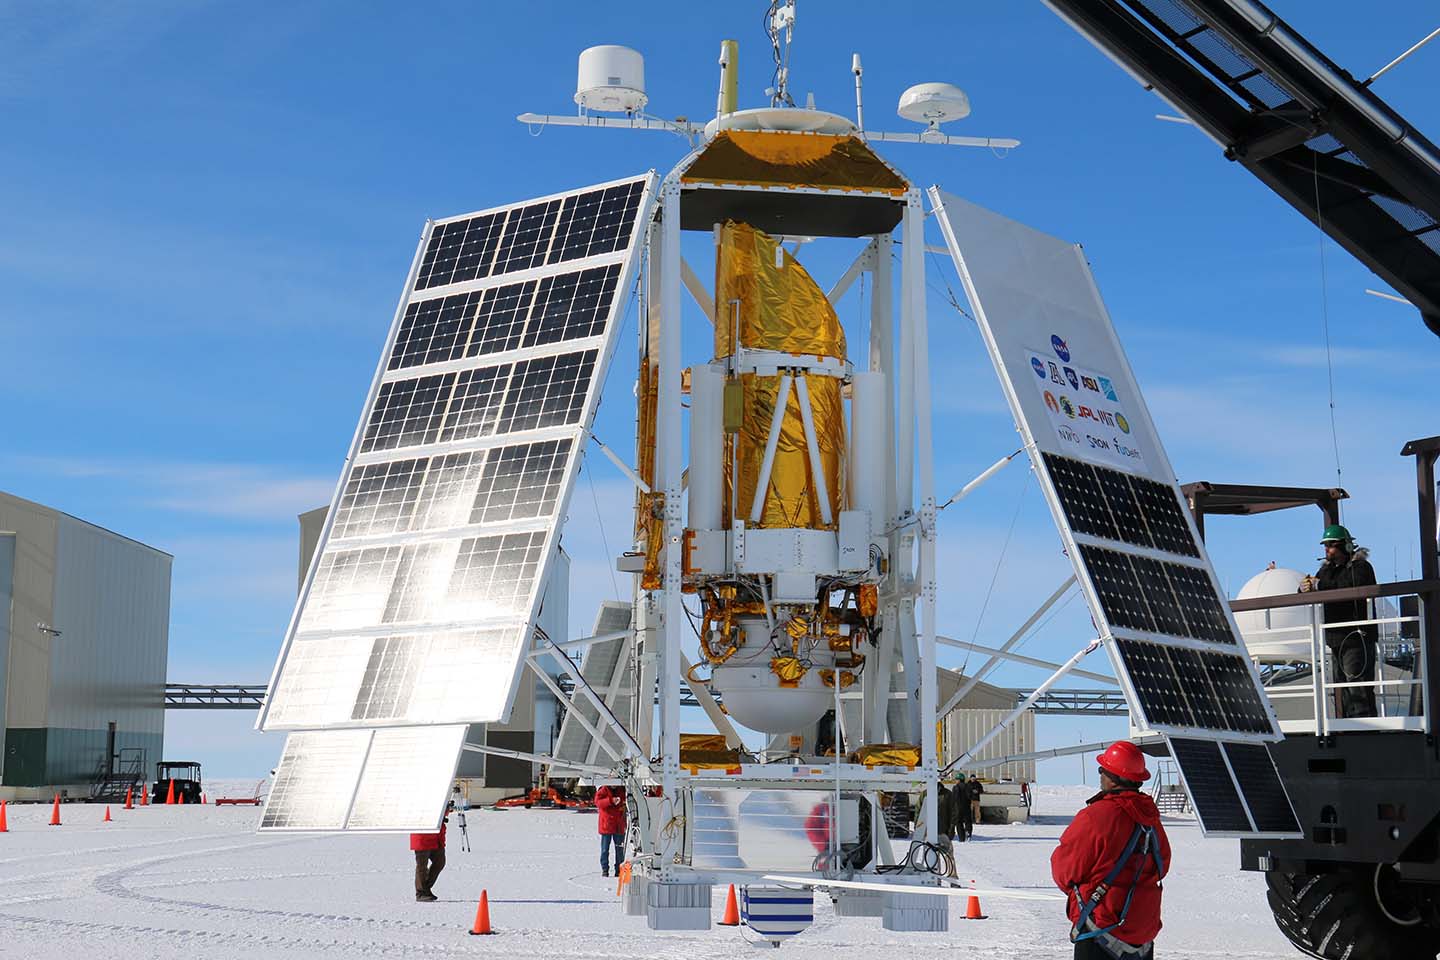 Un pallone aerostatico sopra l'Antartide aiuterà la NASA a studiare meglio la Via Lattea e le galassie vicine